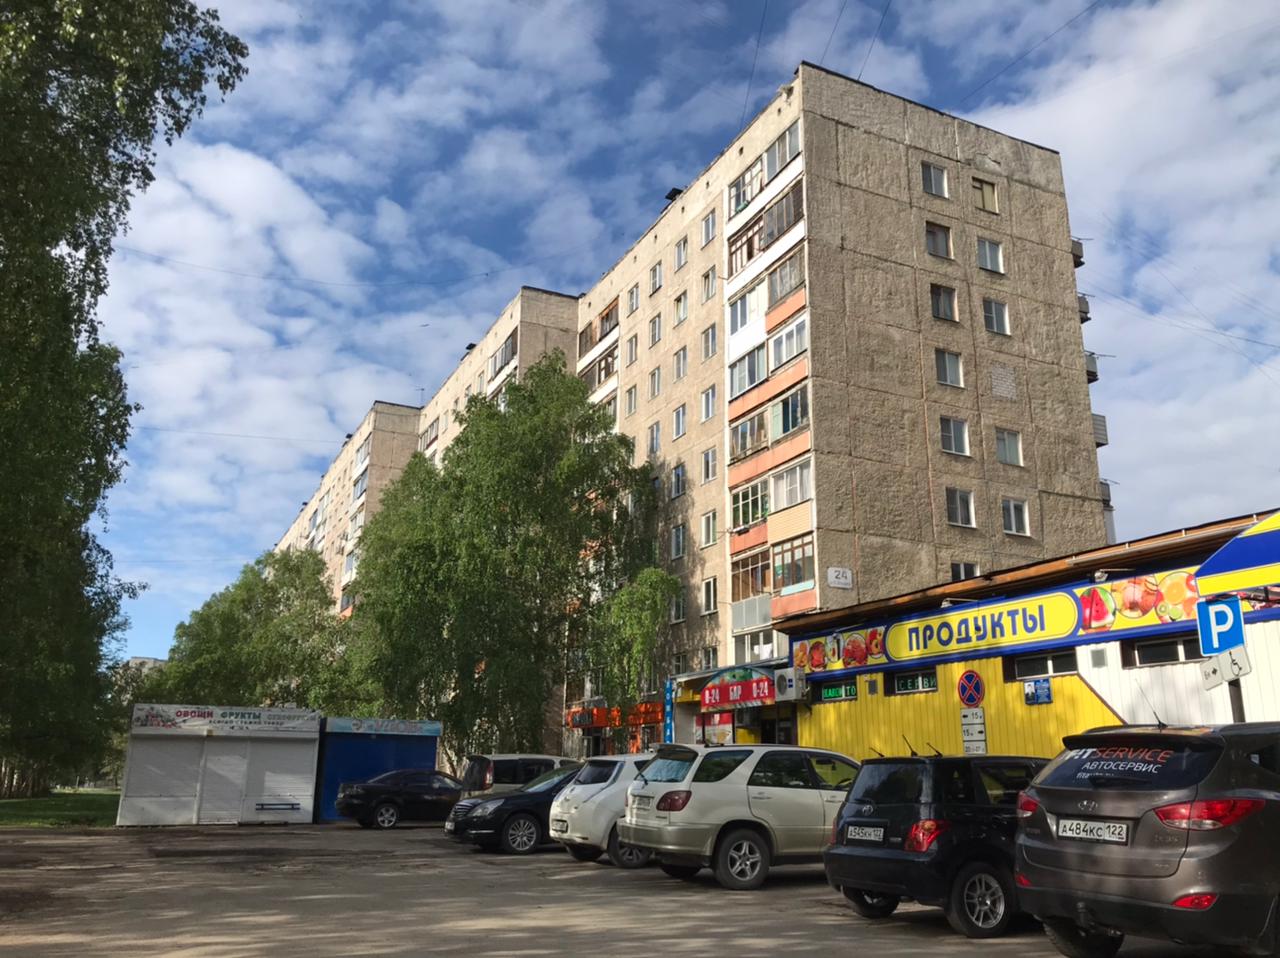 Для Елены и Сергея взыскали с МУП сумму 201 244 руб., после залива квартиры в Барнауле